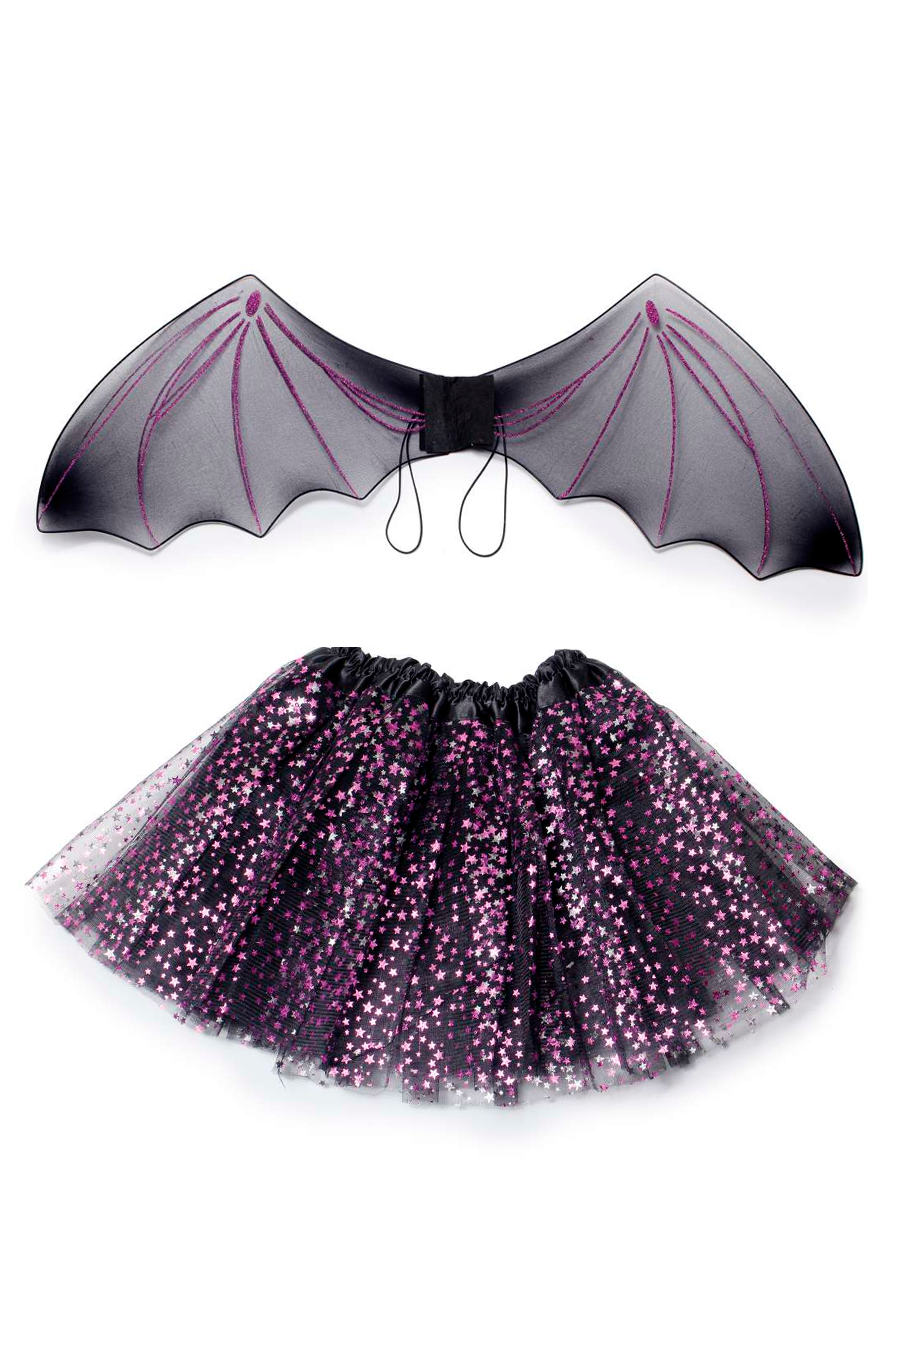 Fantasia Infantil De Halloween Bruxa Com Morcegos Meninas